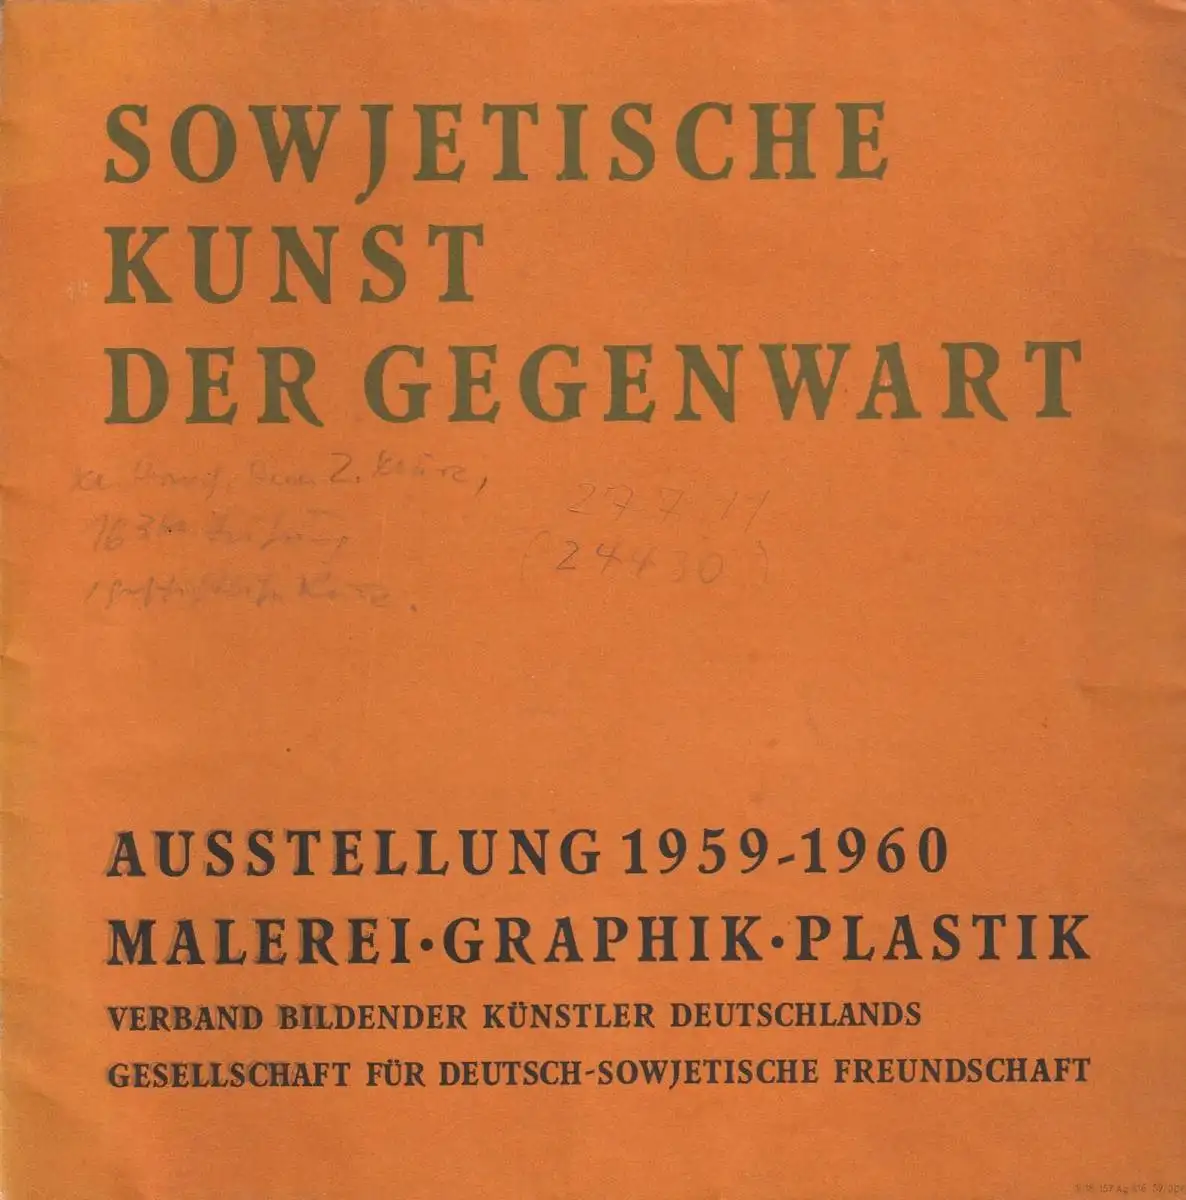 Buch: Sowjetische Kunst der Gegenwart, Ausstellung 1959 - 1960: Malerei, Graphik